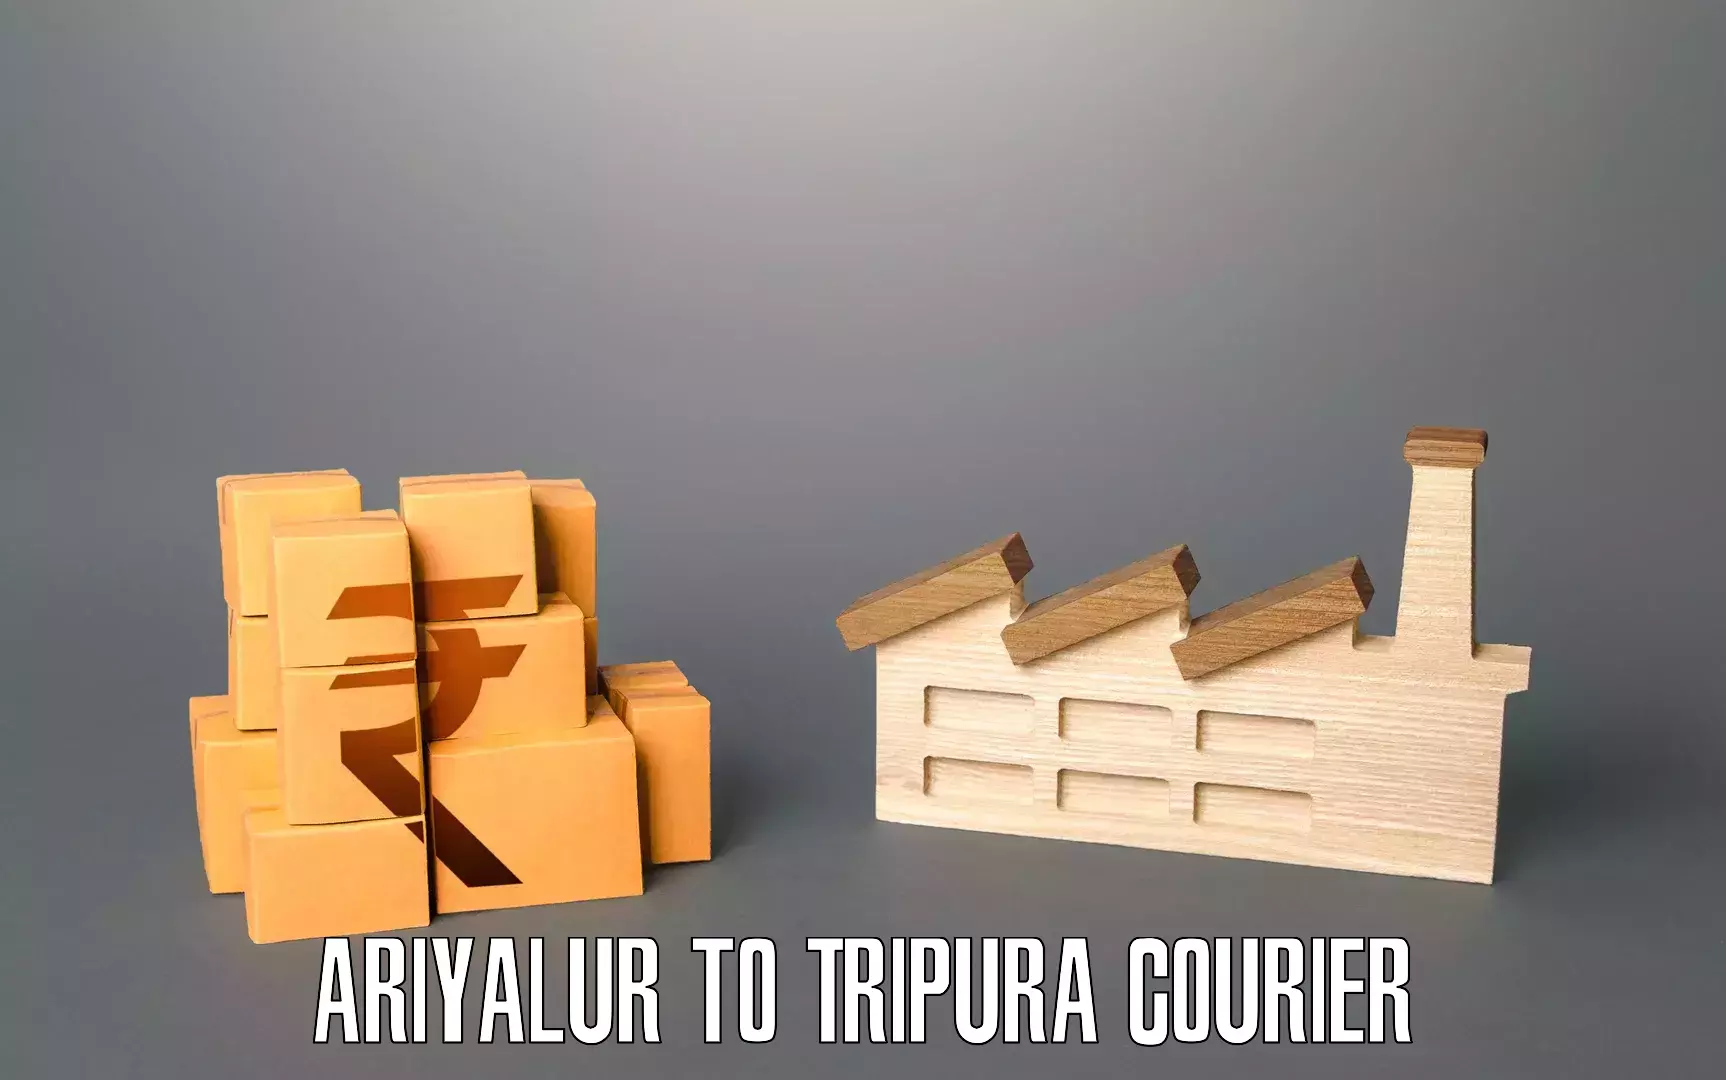 Furniture moving experts Ariyalur to Tripura